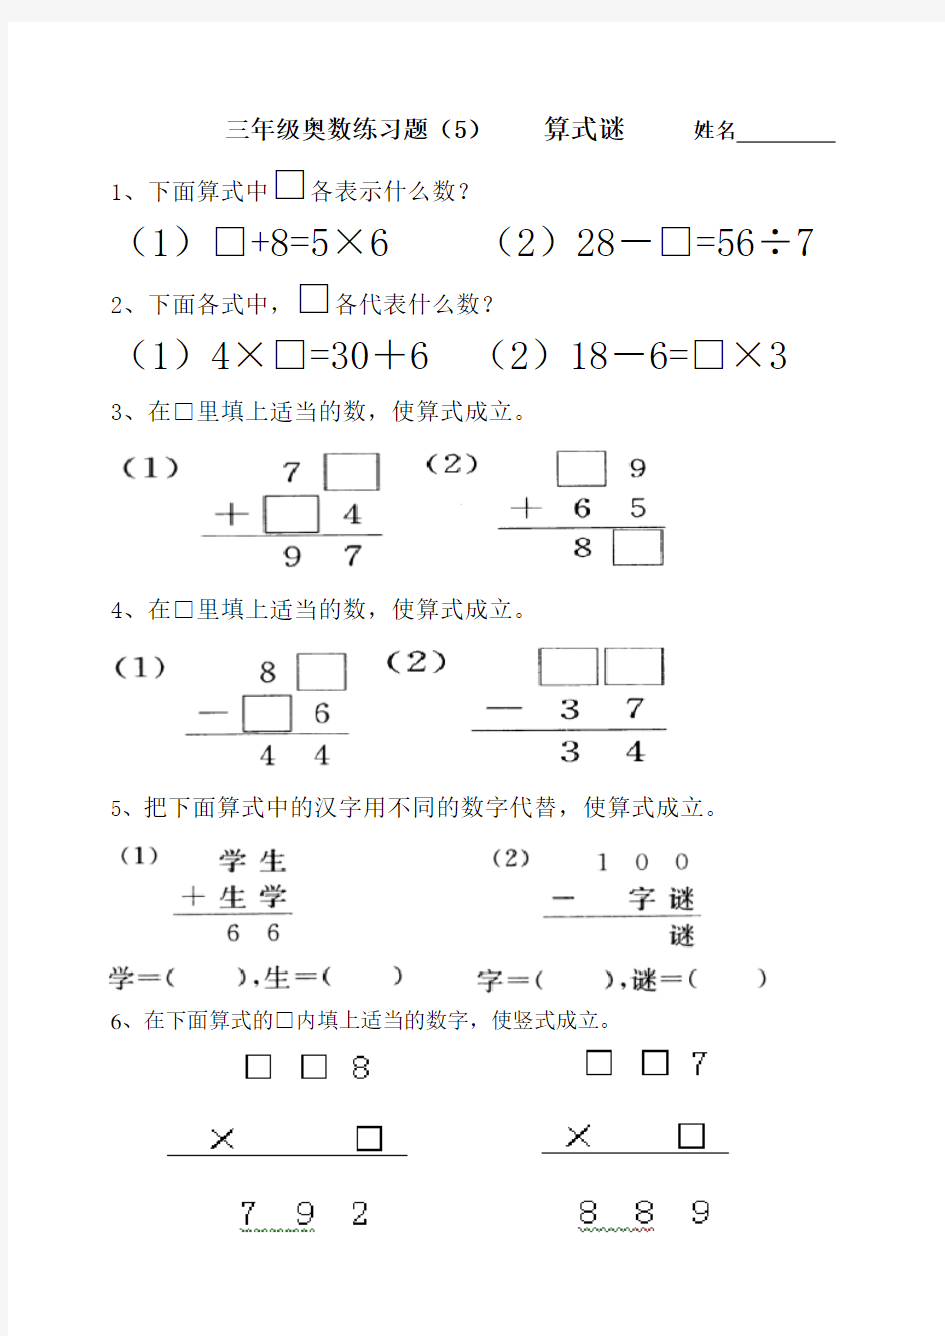 (完整)三年级奥数练习题(5)算式谜